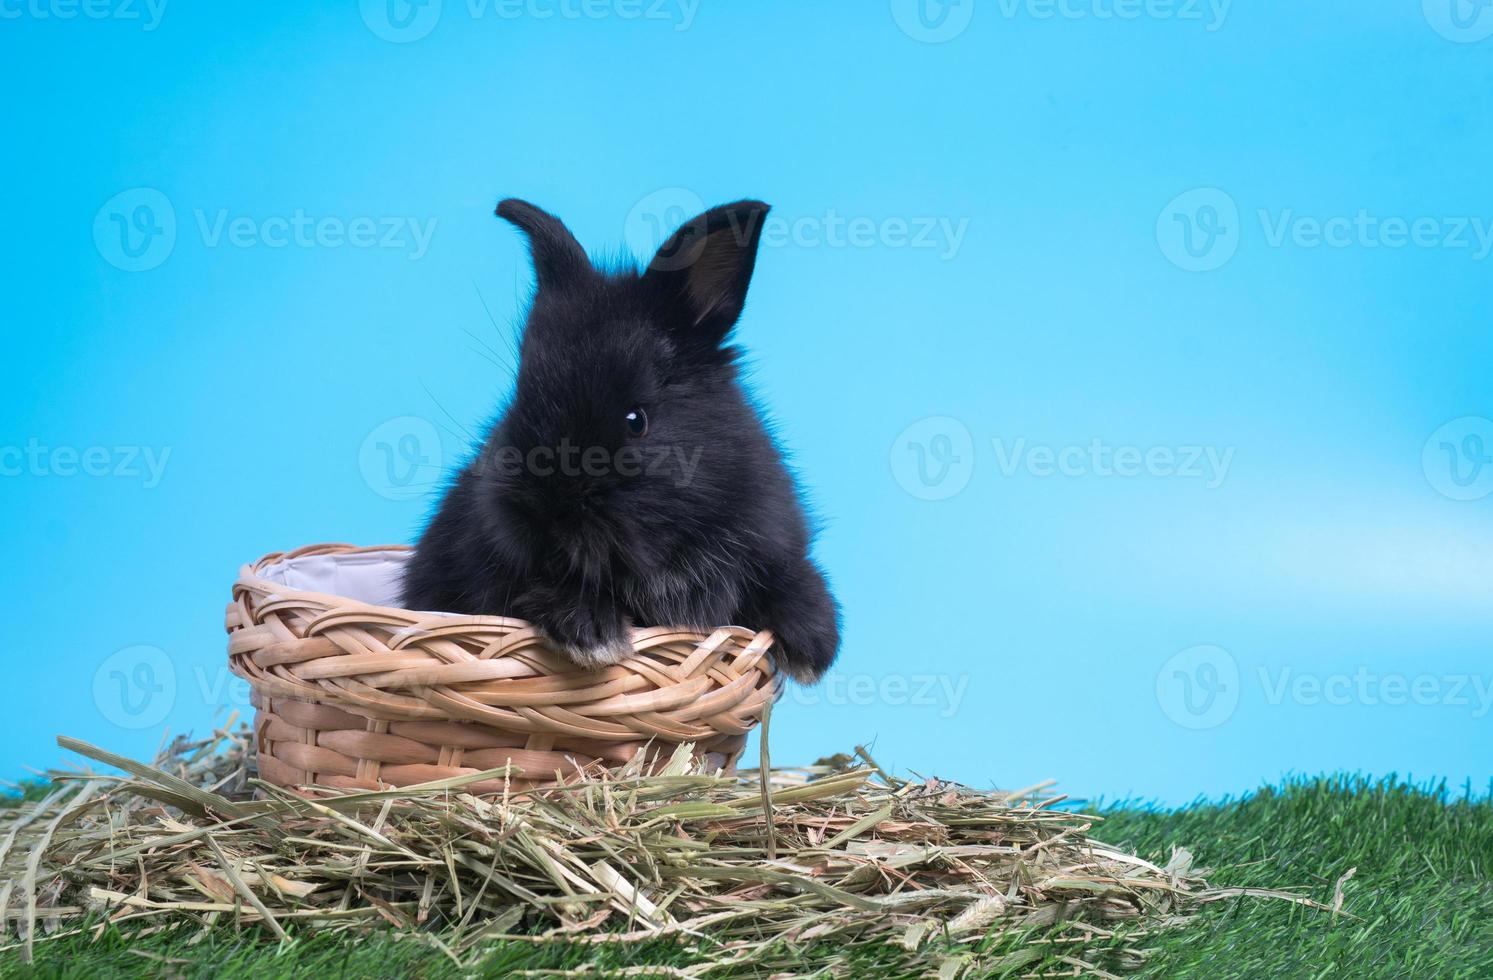 peloso e soffice carino nero coniglio è seduta nel il cestino su verde erba e blu sfondo. concetto di roditore animale domestico e Pasqua. foto